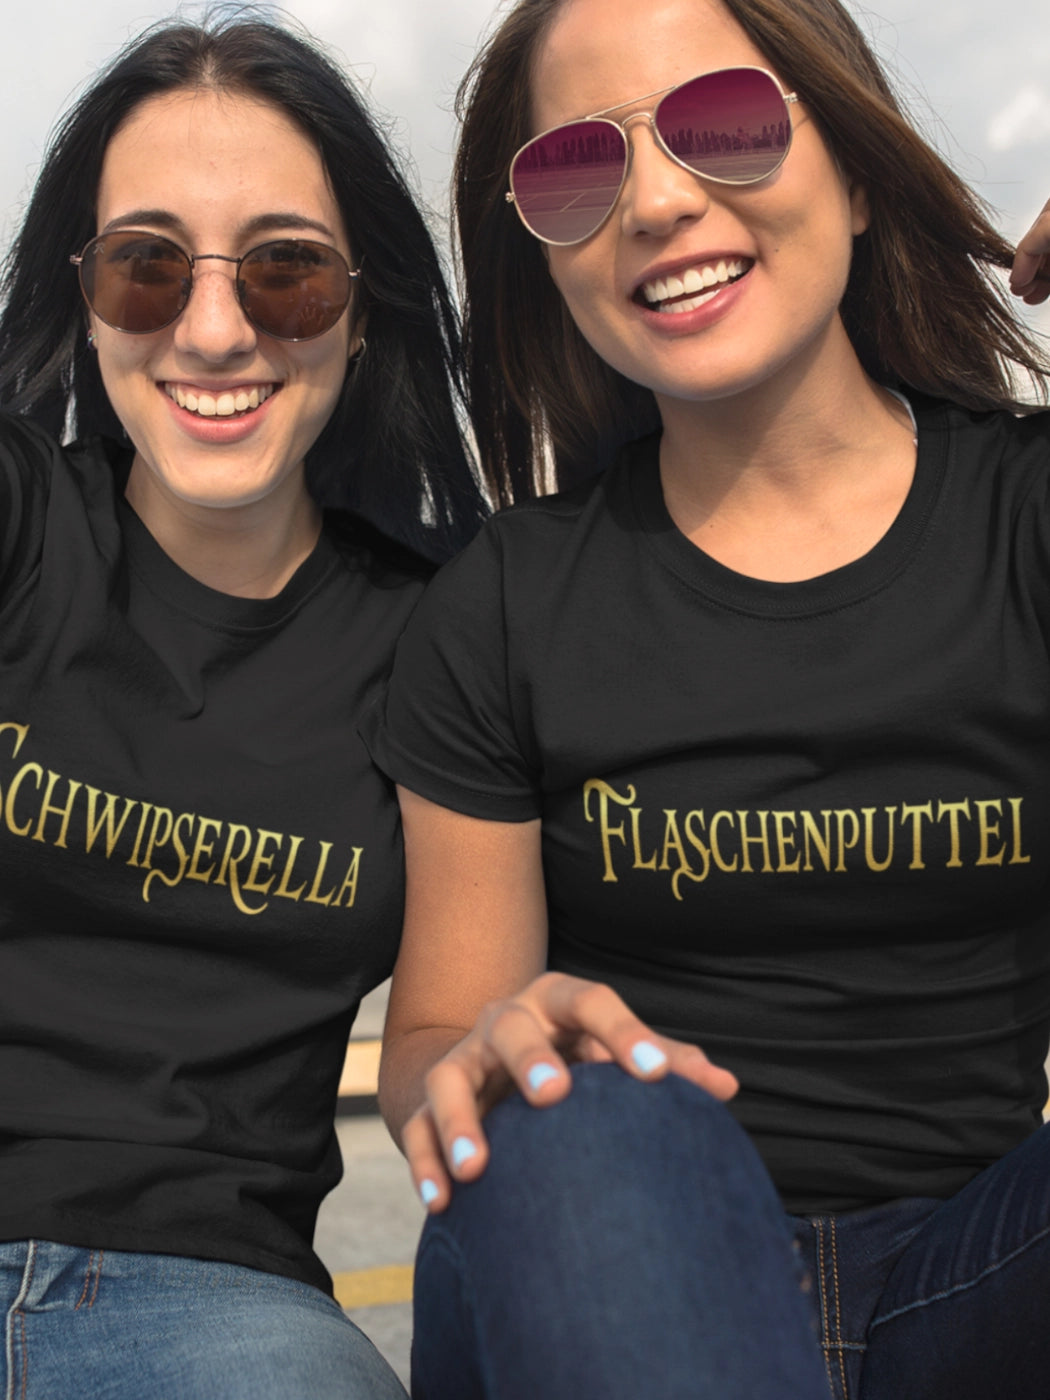 Selfie von zwei Freundinnen mit Prinzessinnen Shirts